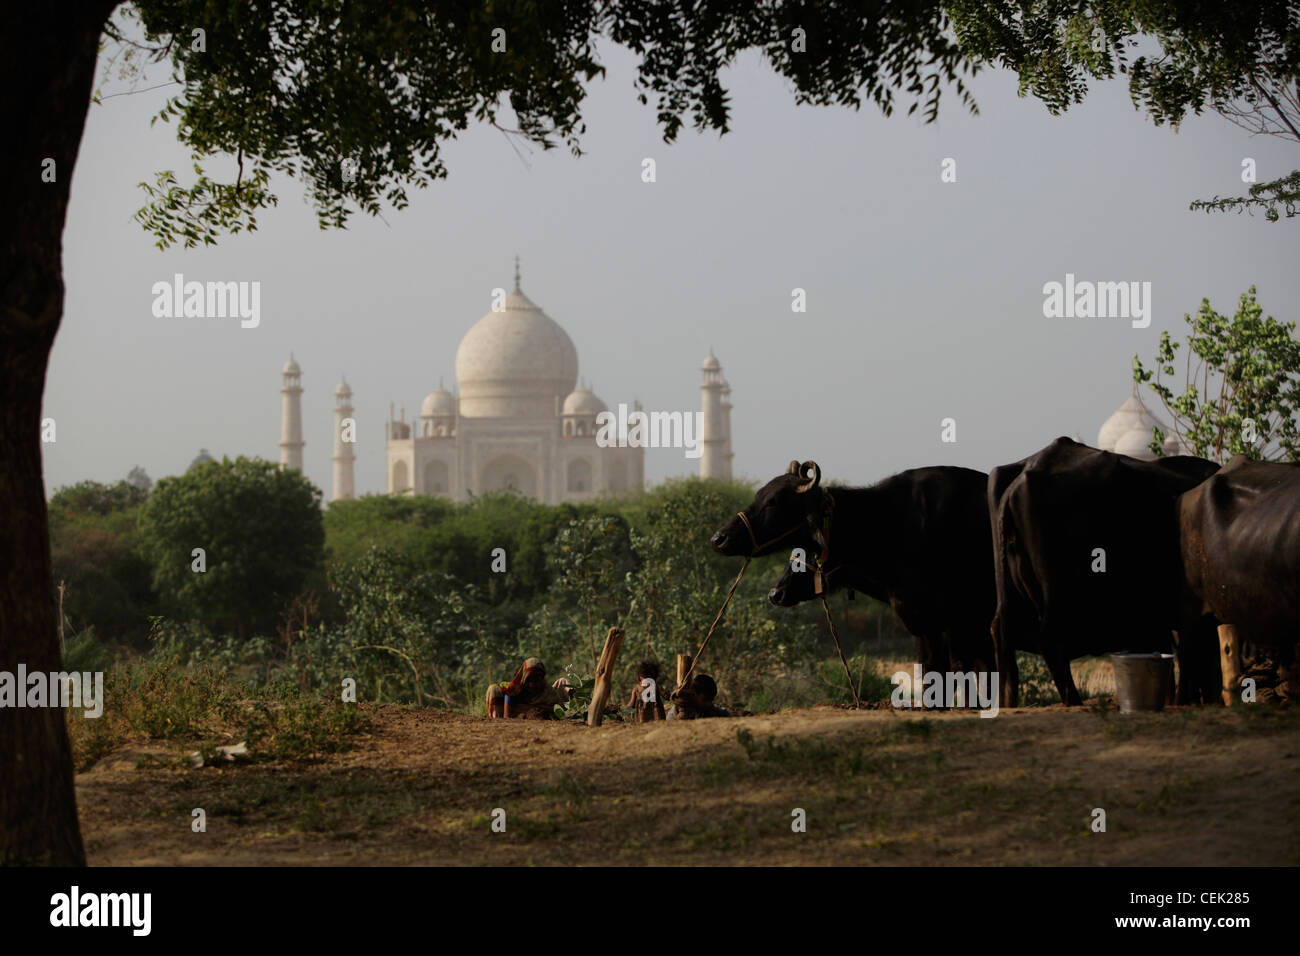 Famille indienne faisant des briques de boue près de vaches, Taj Mahal en arrière-plan. Agra, Inde Banque D'Images